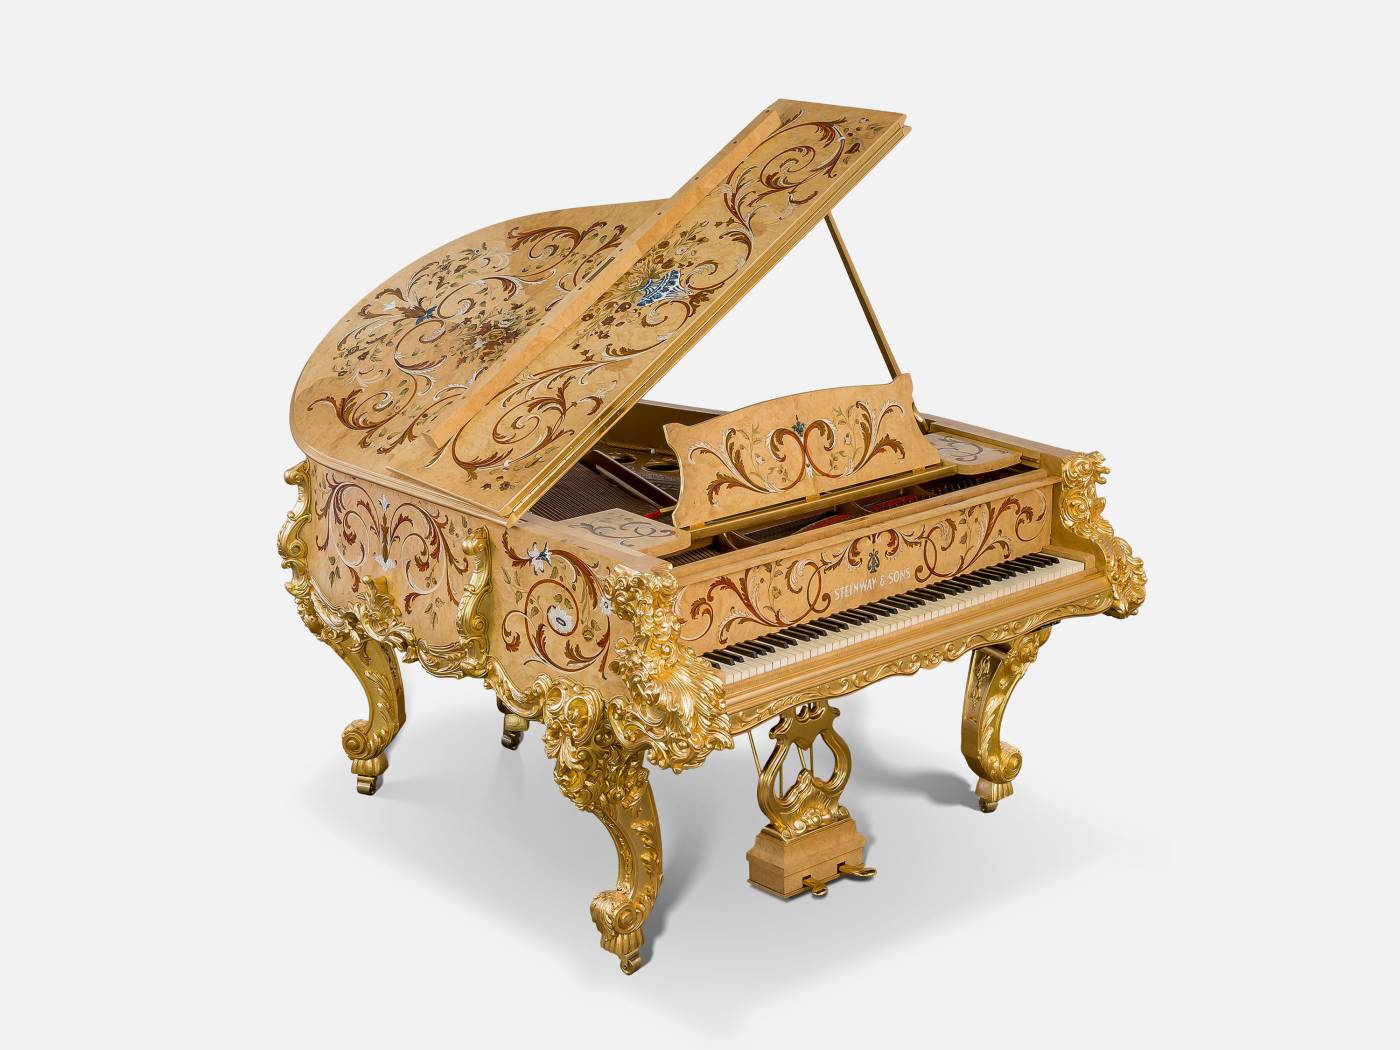 ART. 2708 – C.G. Capelletti Italian Luxury Classic Pianos. Made in Italy classic interior design